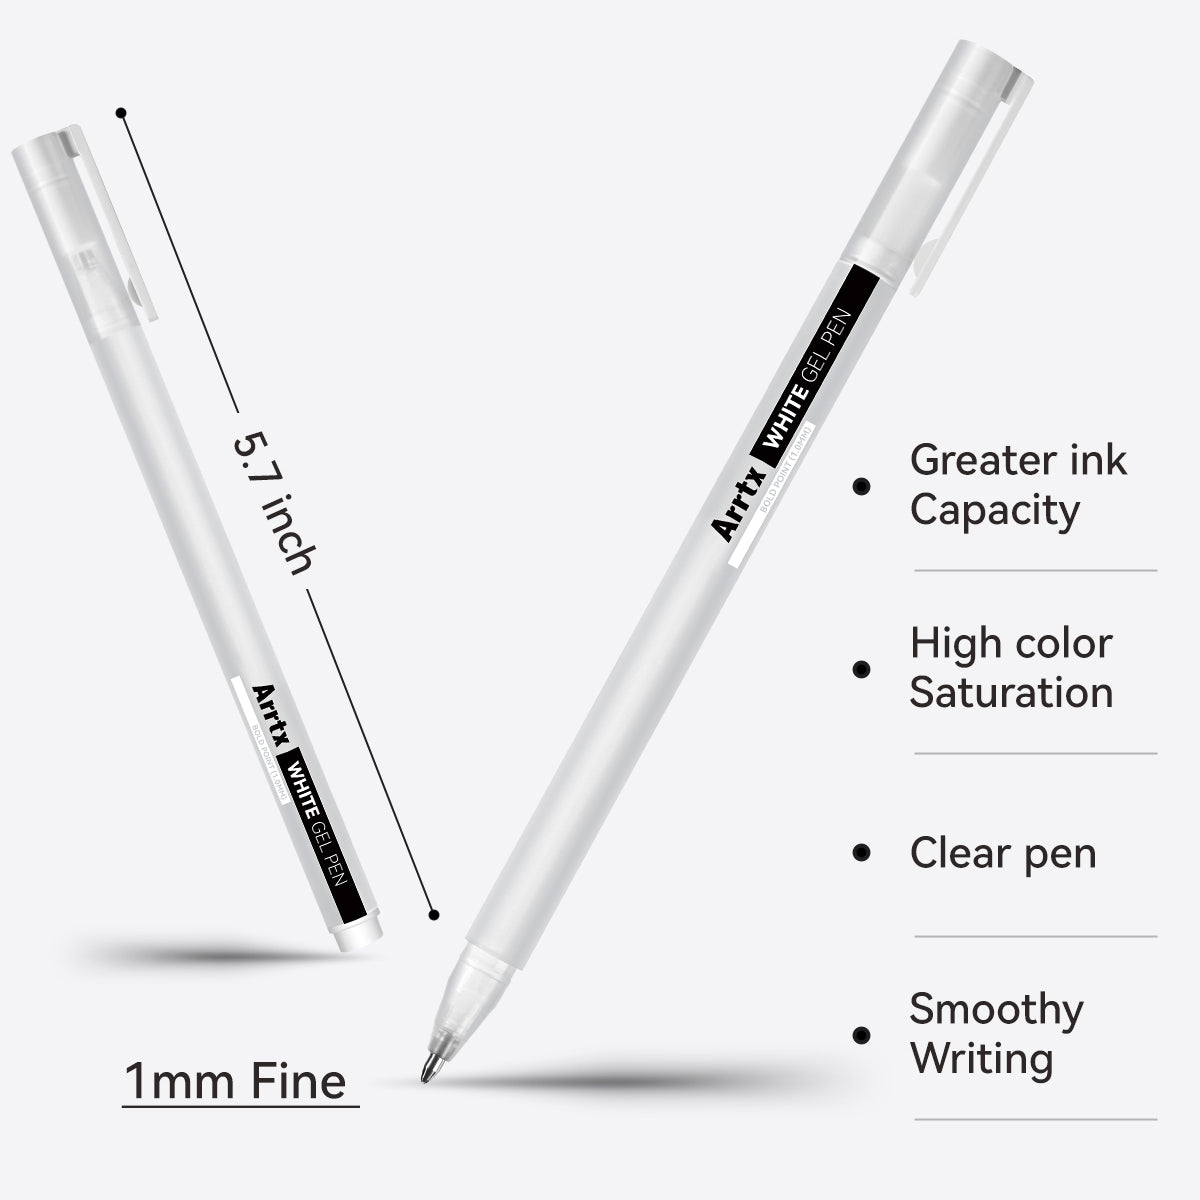 Arrtx Gel Pens Gold Color 10 Pack Ink Pens Large Capacity Ink